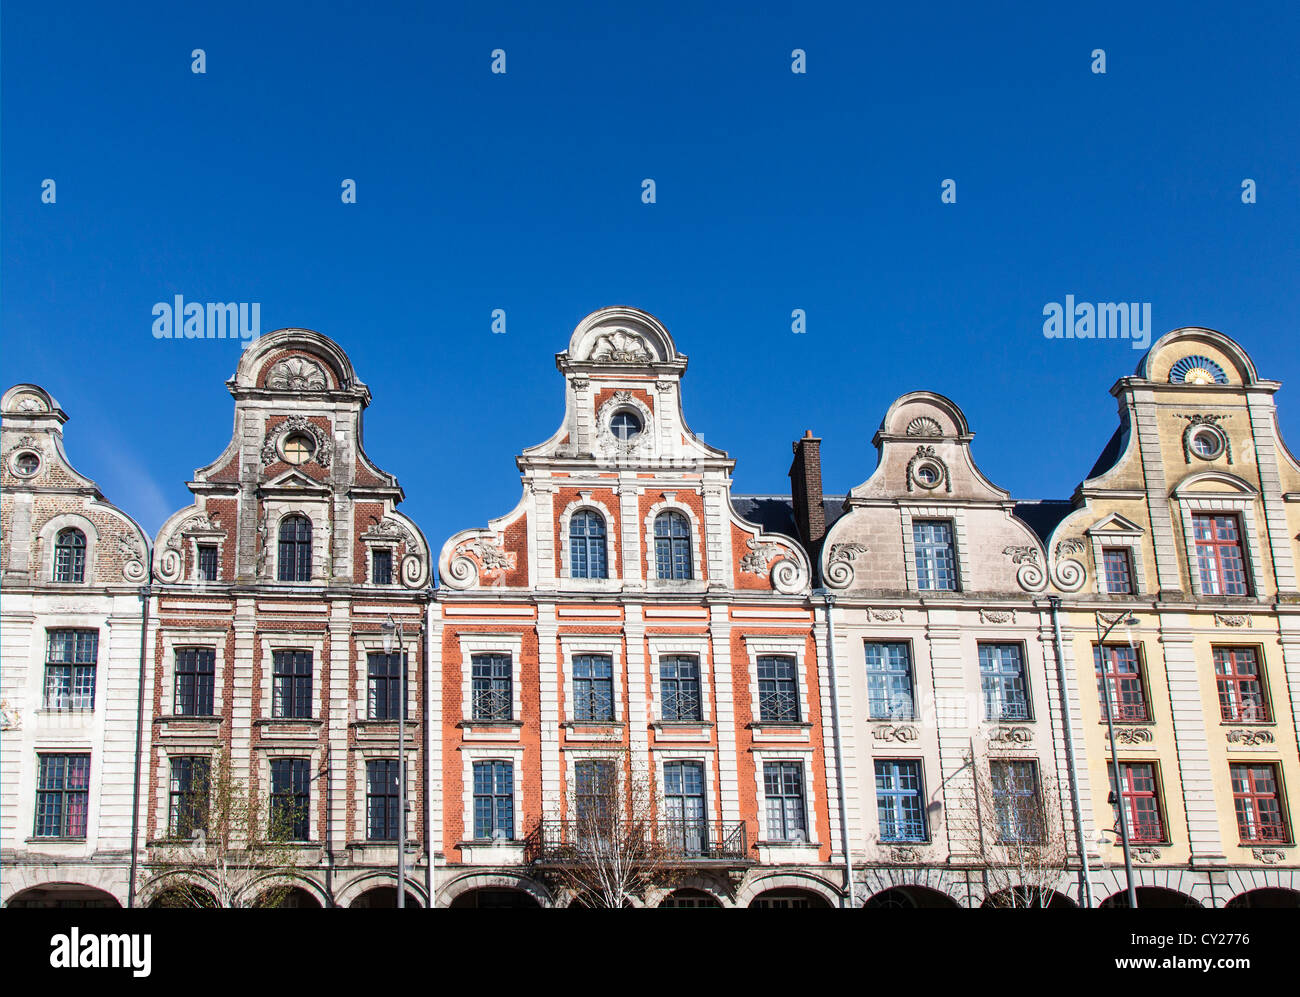 Las fachadas barrocas flamencas, Arras Nord Pas de Calais, Francia Foto de stock